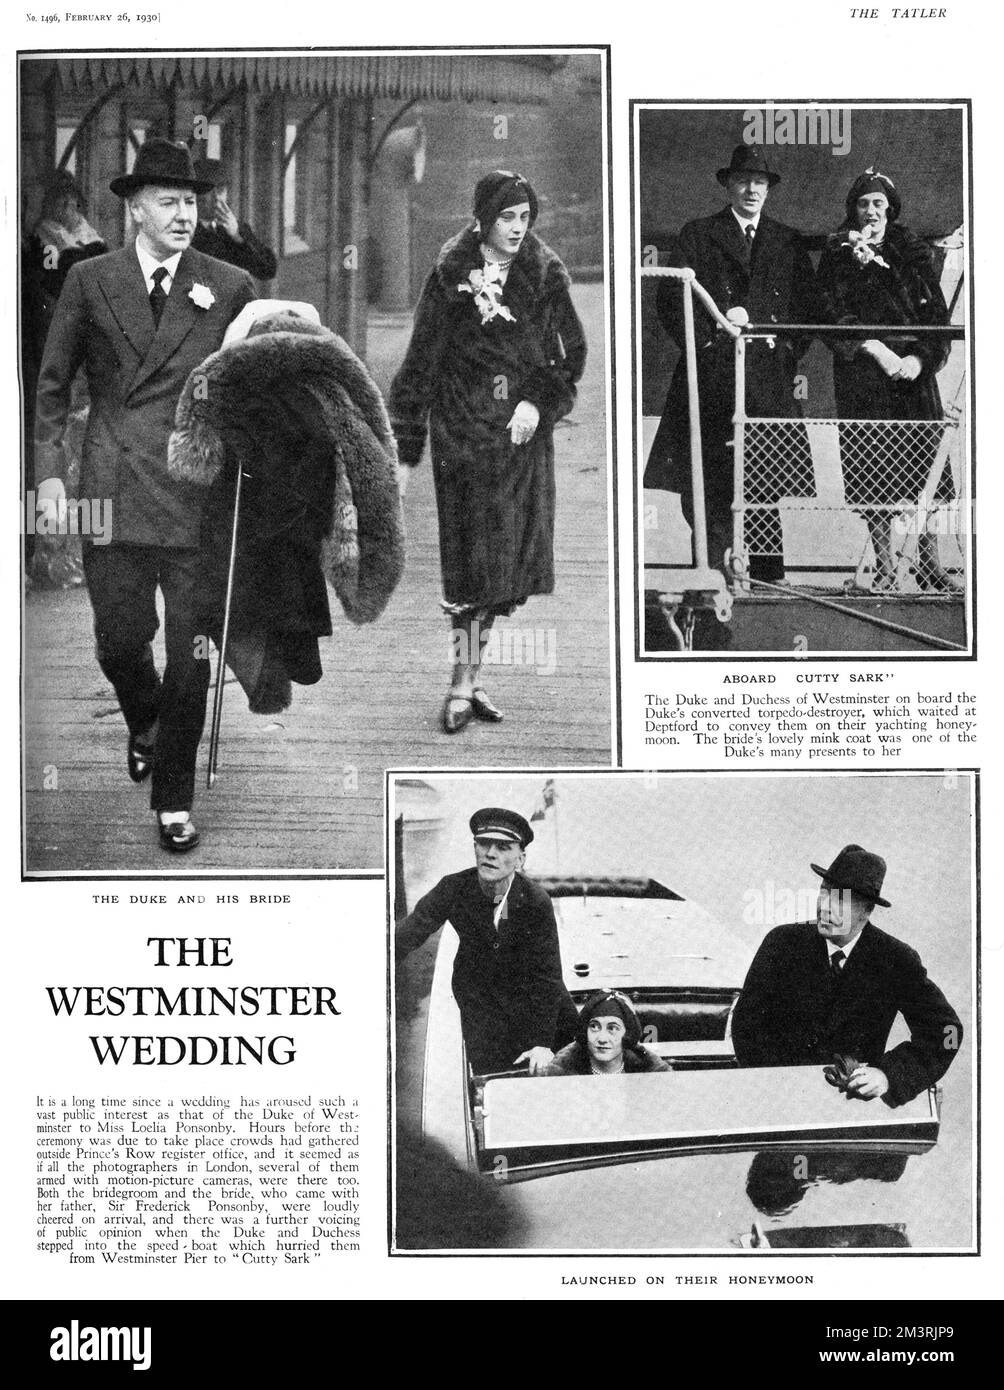 Page du Tatler faisant état du mariage de Hugh Grosvenor, 2nd duc de Westminster et Loelia Ponsonby (sa troisième femme) au bureau d'enregistrement de Prince's Row le 20 février 1930. Les photos montrent le duc et sa nouvelle mariée partant de Westminster Pier sur un hors-bord. De là, ils sont montés à bord du destroyer torpedoe reconverti du duc, le Cutty Sark qui attendait à Deptford pour les transmettre lors de leur lune de miel de yachting. Le manteau de fourrure porté par Loelia était l'un des nombreux cadeaux de mariage du duc pour elle. Le couple, qui n'a jamais eu d'enfants, a divorcé en 1947 après des années de séparation. 1930 Banque D'Images